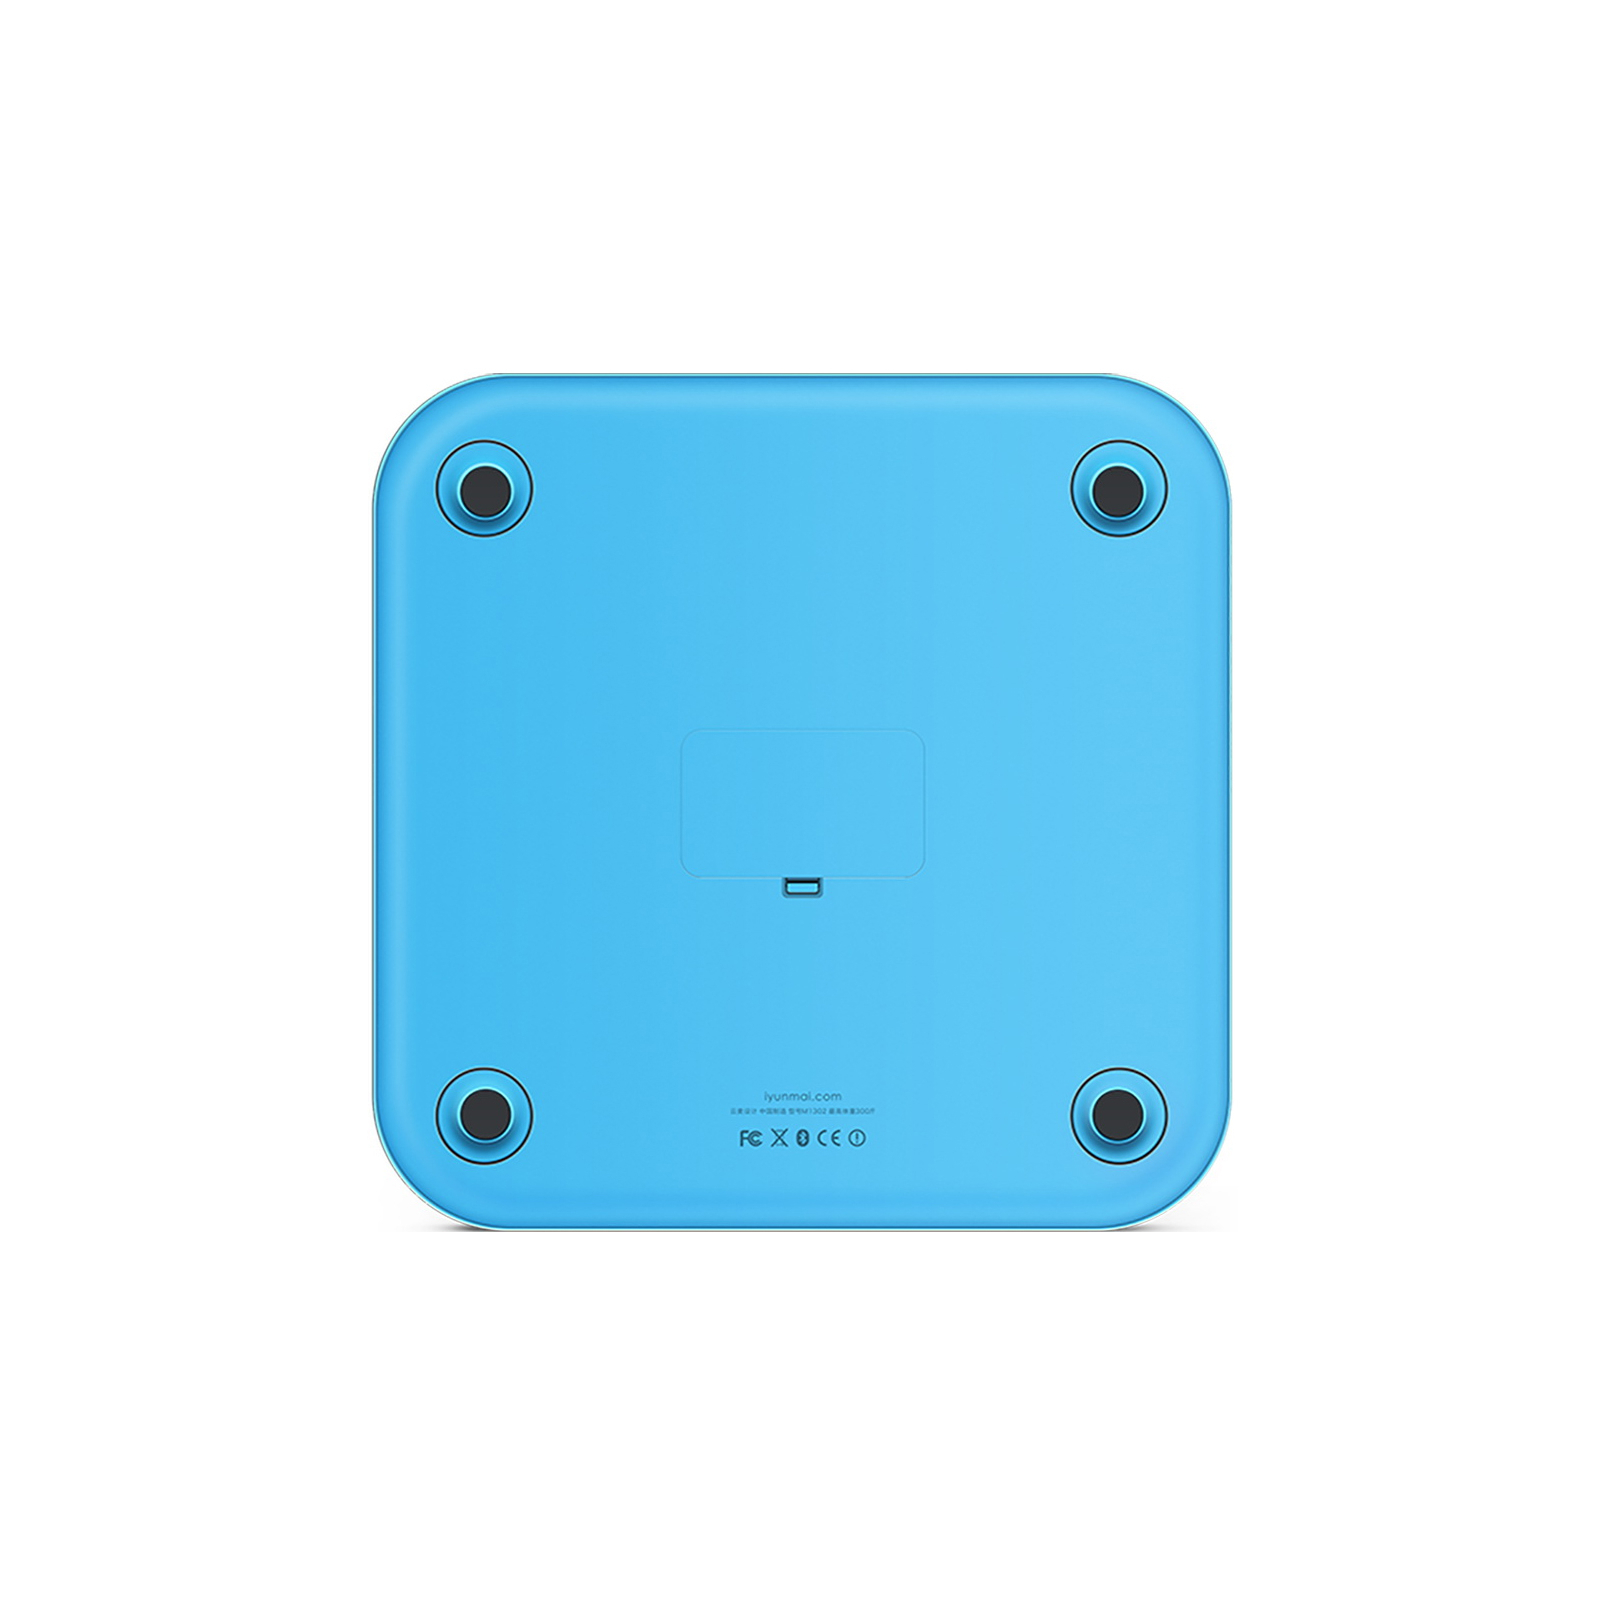 Весы напольные Yunmai Color Smart Scale Blue изображение 2